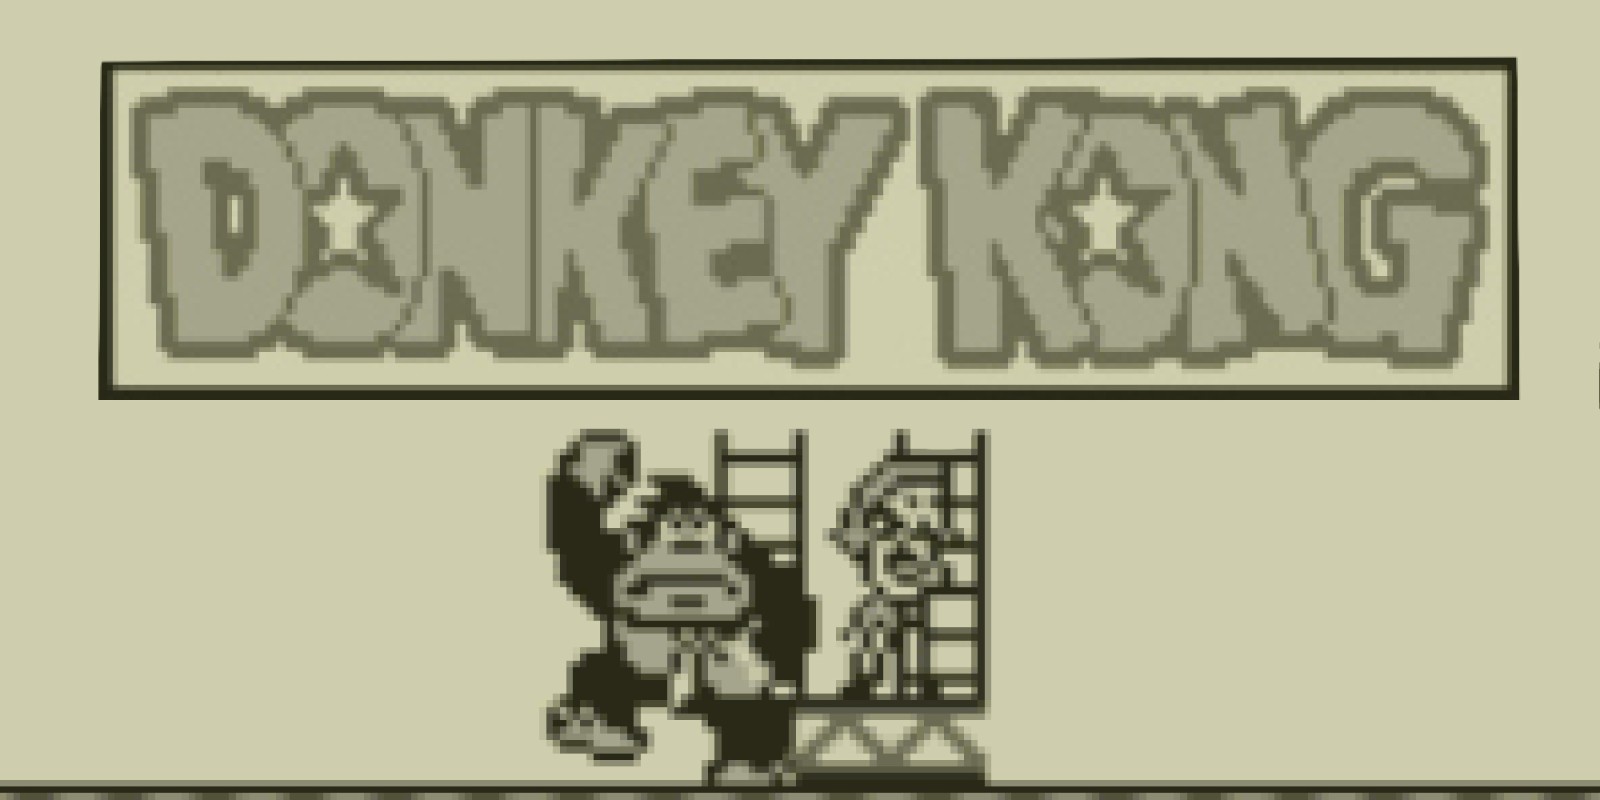 donkey kong gameboy